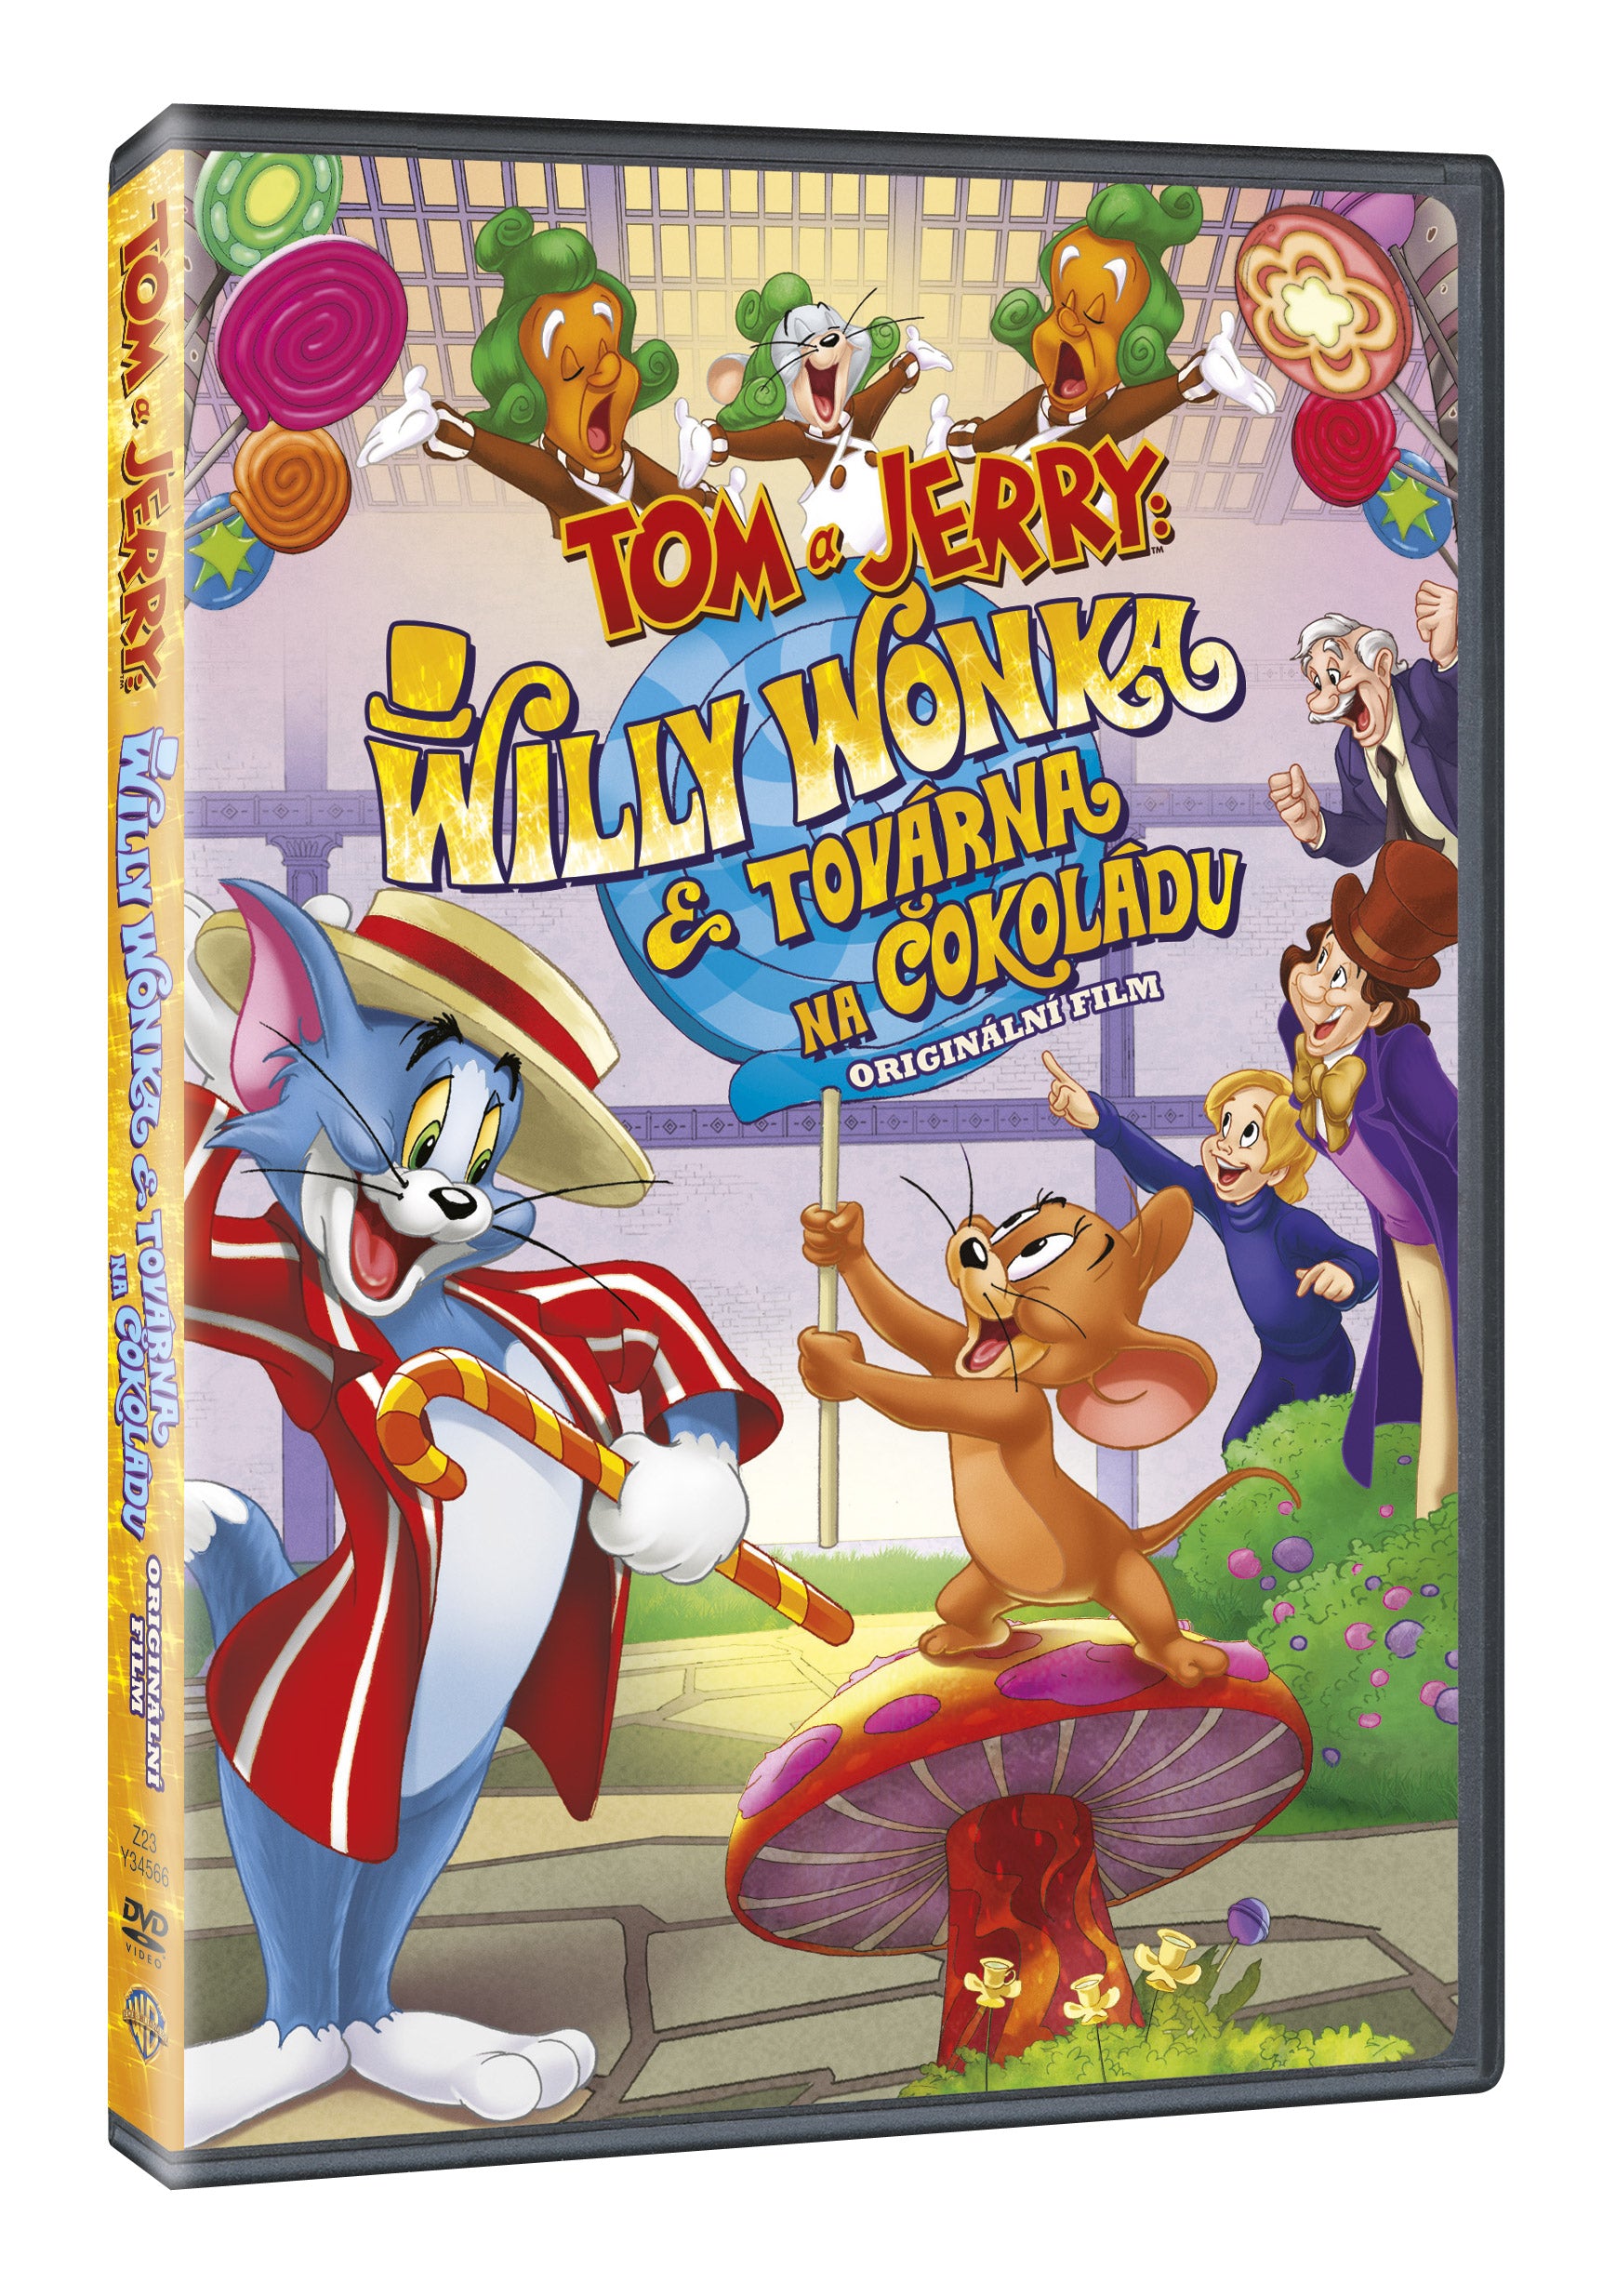 Tom und Jerry: Willy Wonka auf DVD / Tom und Jerry: Willy Wonka